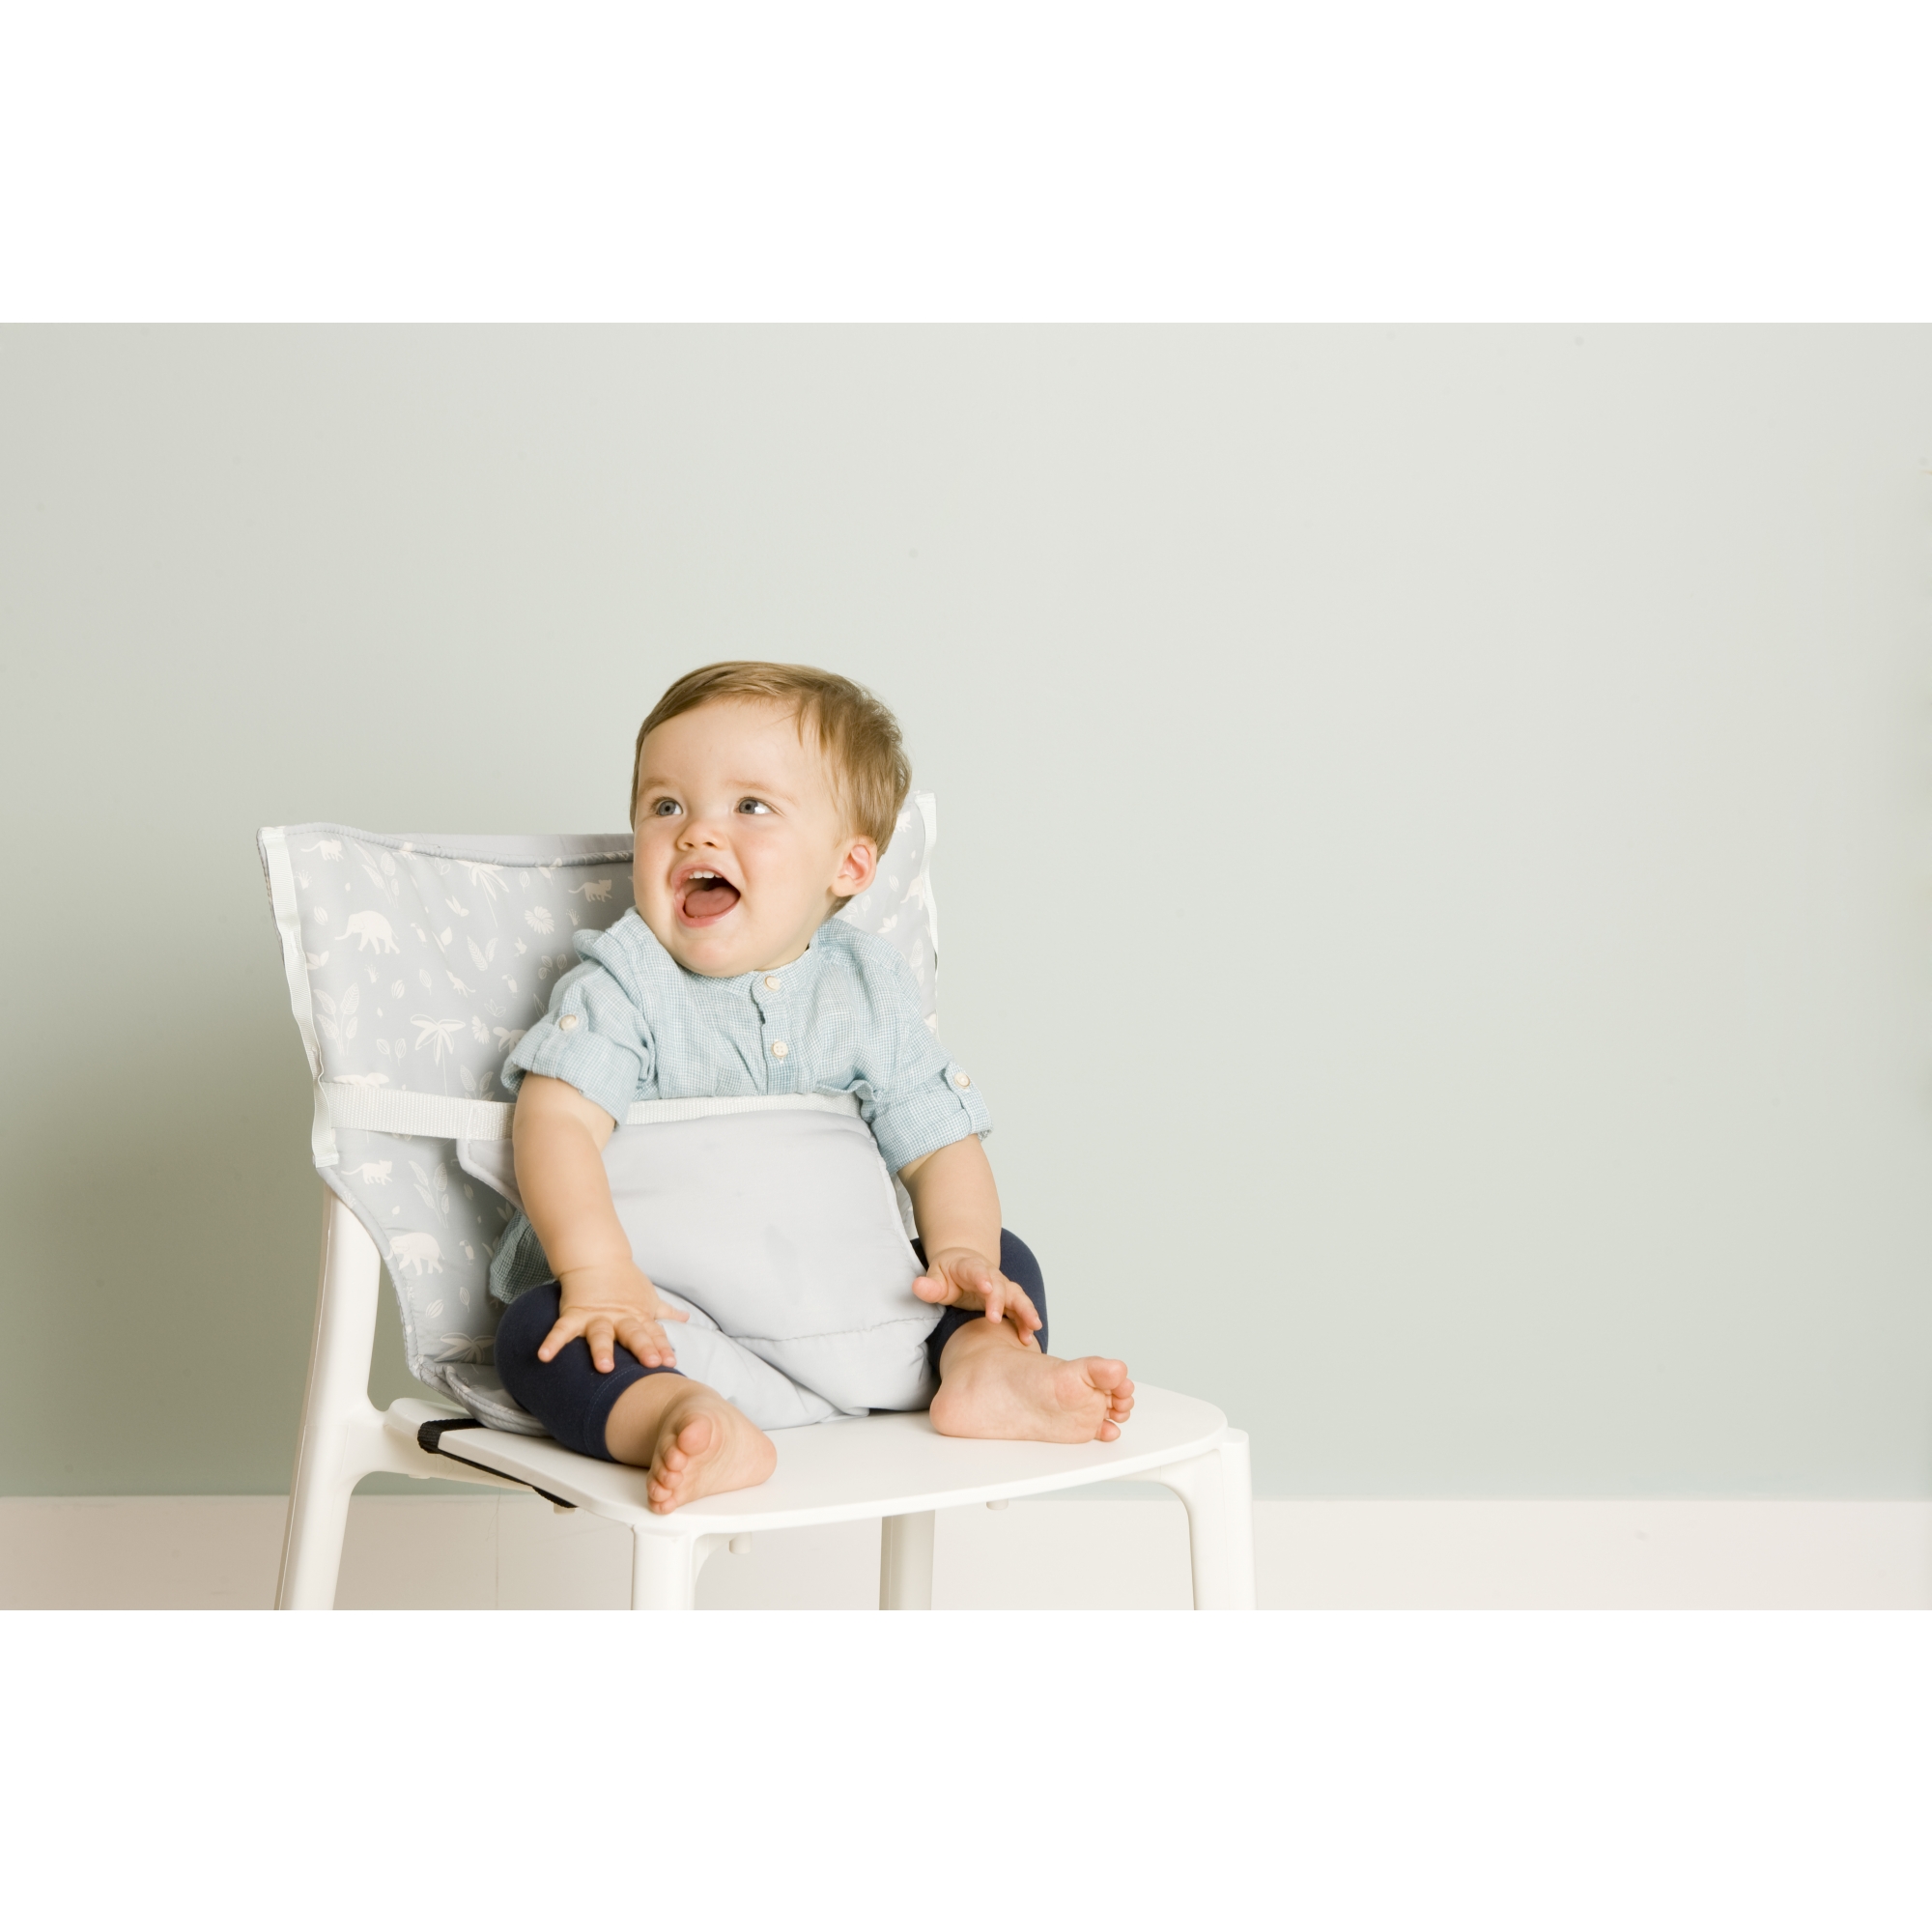 Totseat : une chaise nomade pour bébé { Maman Natur'elle } - Plus